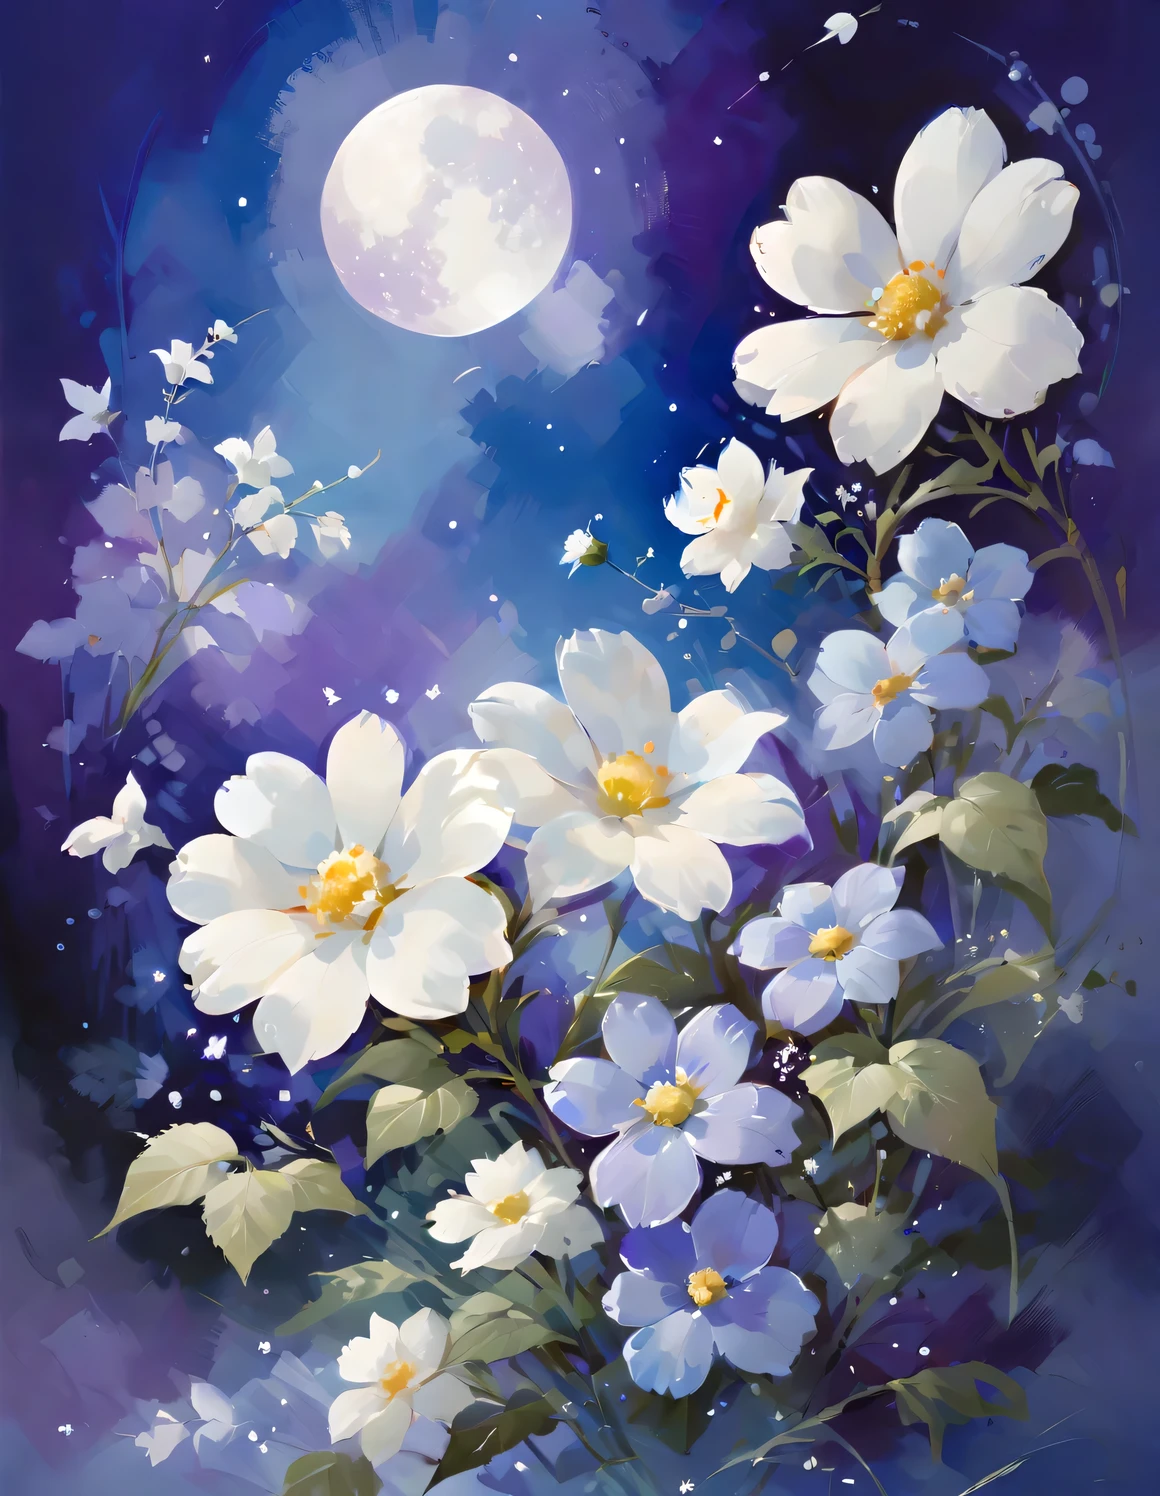 Papel pintado a todo color con fondo violeta, flor blanca, Adopt Xiao Feiyue style, tonos apagados, La belleza de la paz y la tranquilidad., Blanco oscuro y azul claro., vistoso, alta resolución, pintura de acuarela,